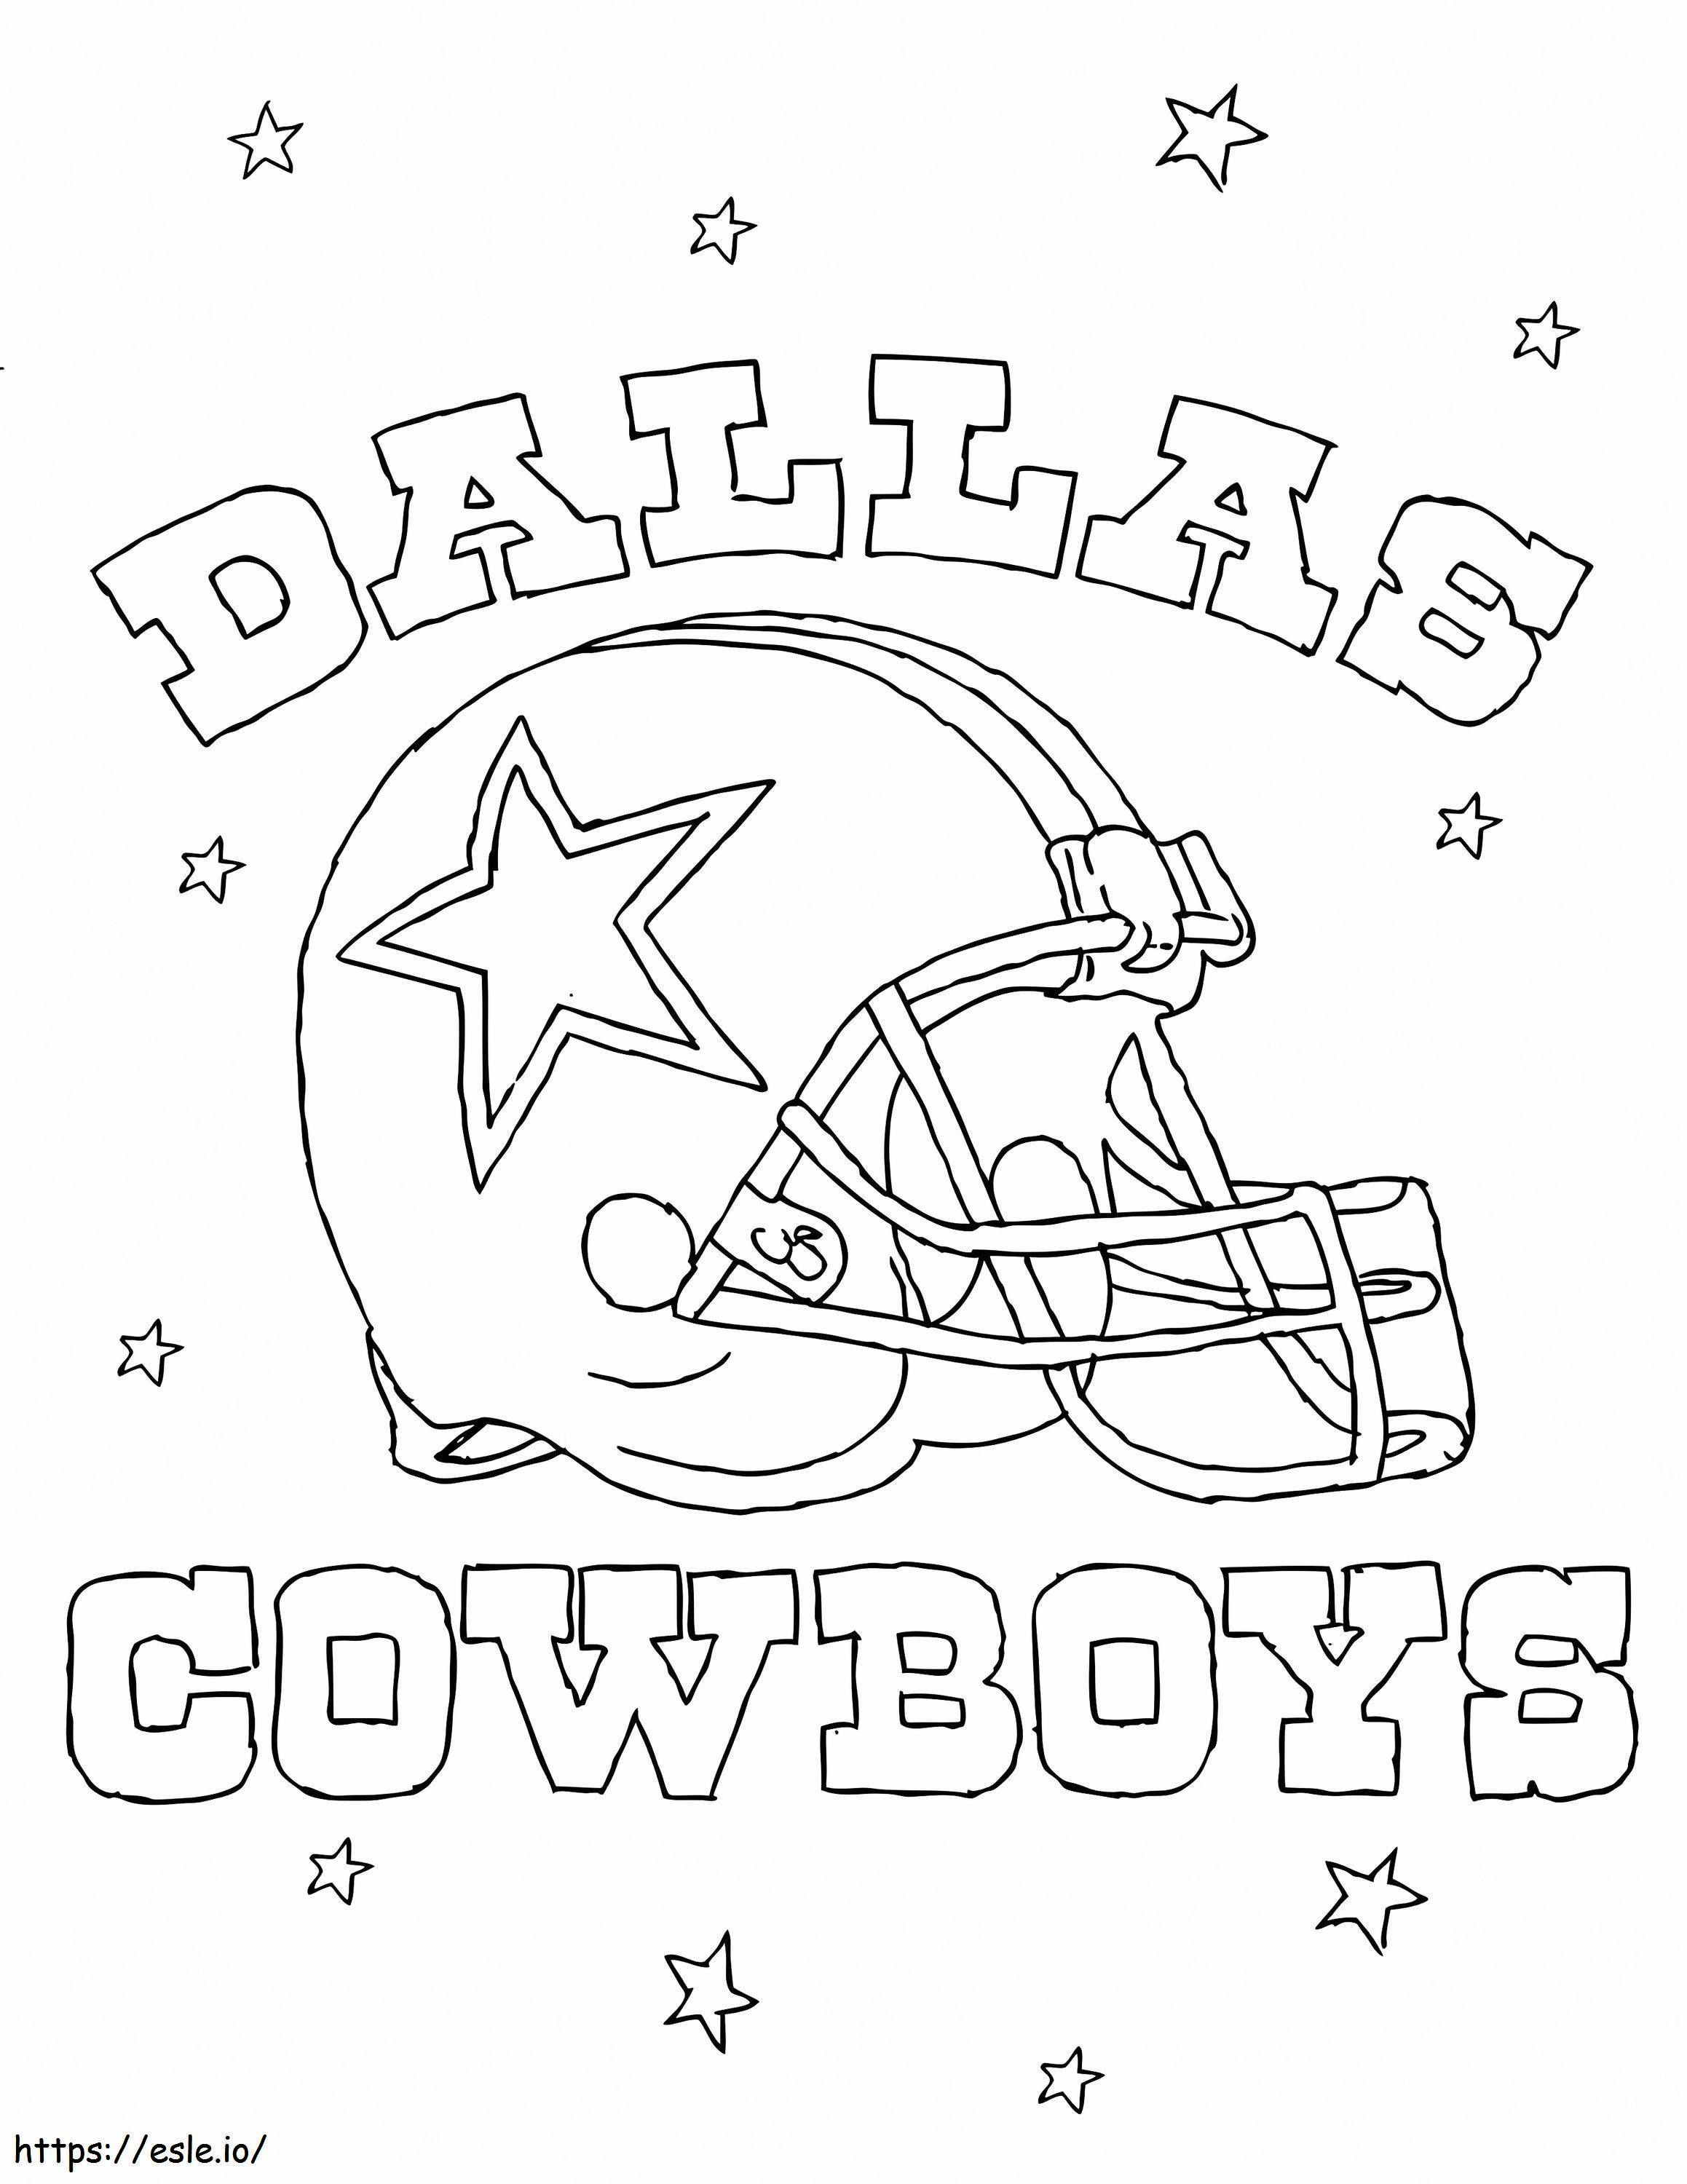 Cowboys de Dallas para colorear